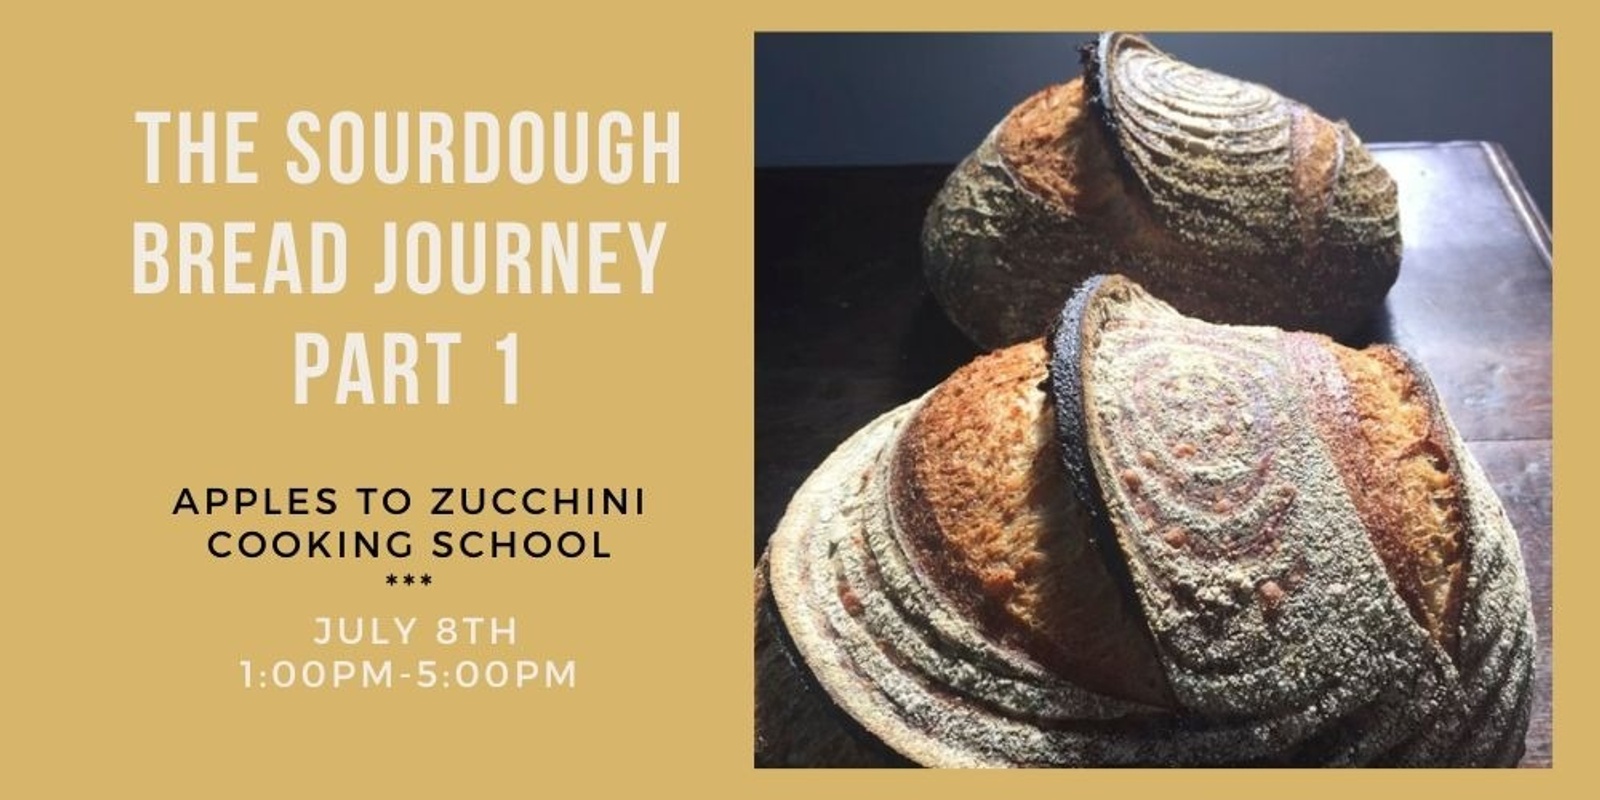 The Sourdough Bread Journey Part 1